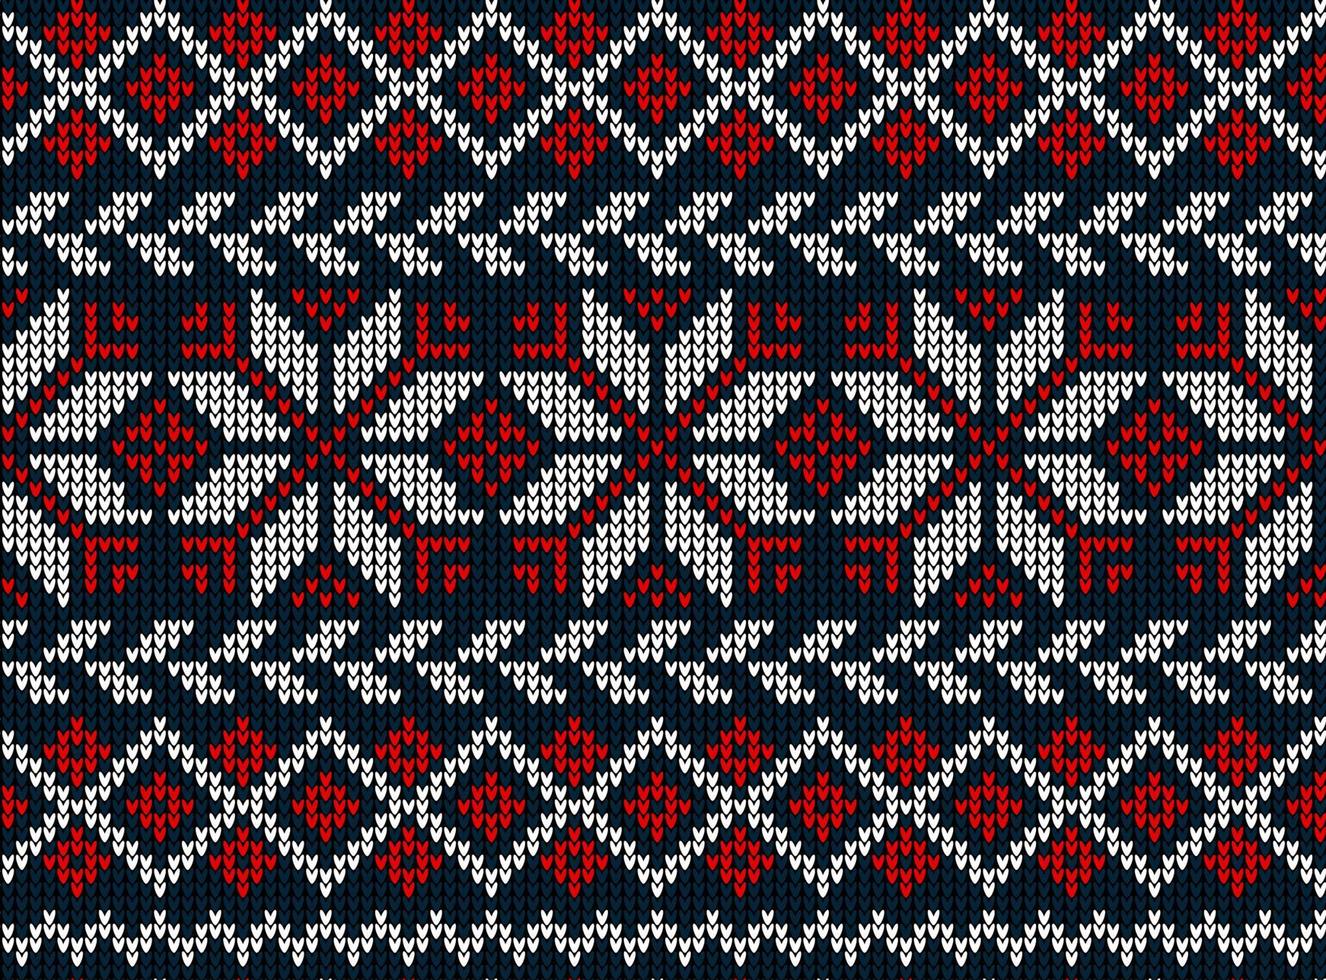 patrón de punto de navidad y año nuevo. diseño de suéter de punto de lana. papel de envolver papel estampado textil. vector